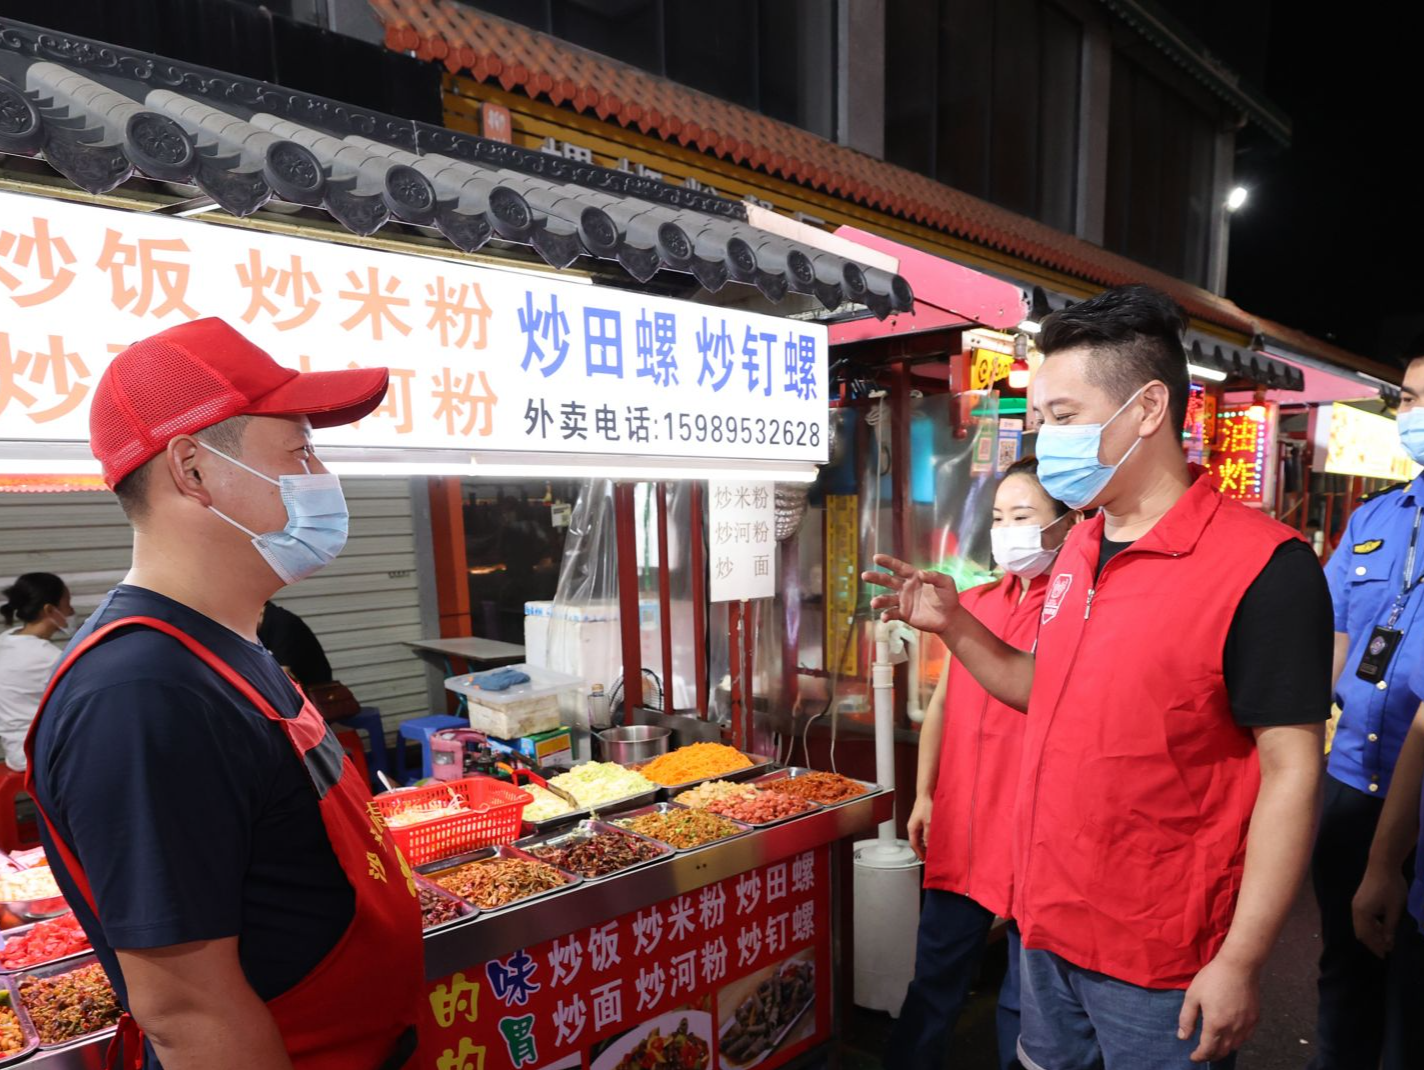 “社区帮衬我们，我们回馈社区” 深圳这群夜市摊主穿上红马甲做义工